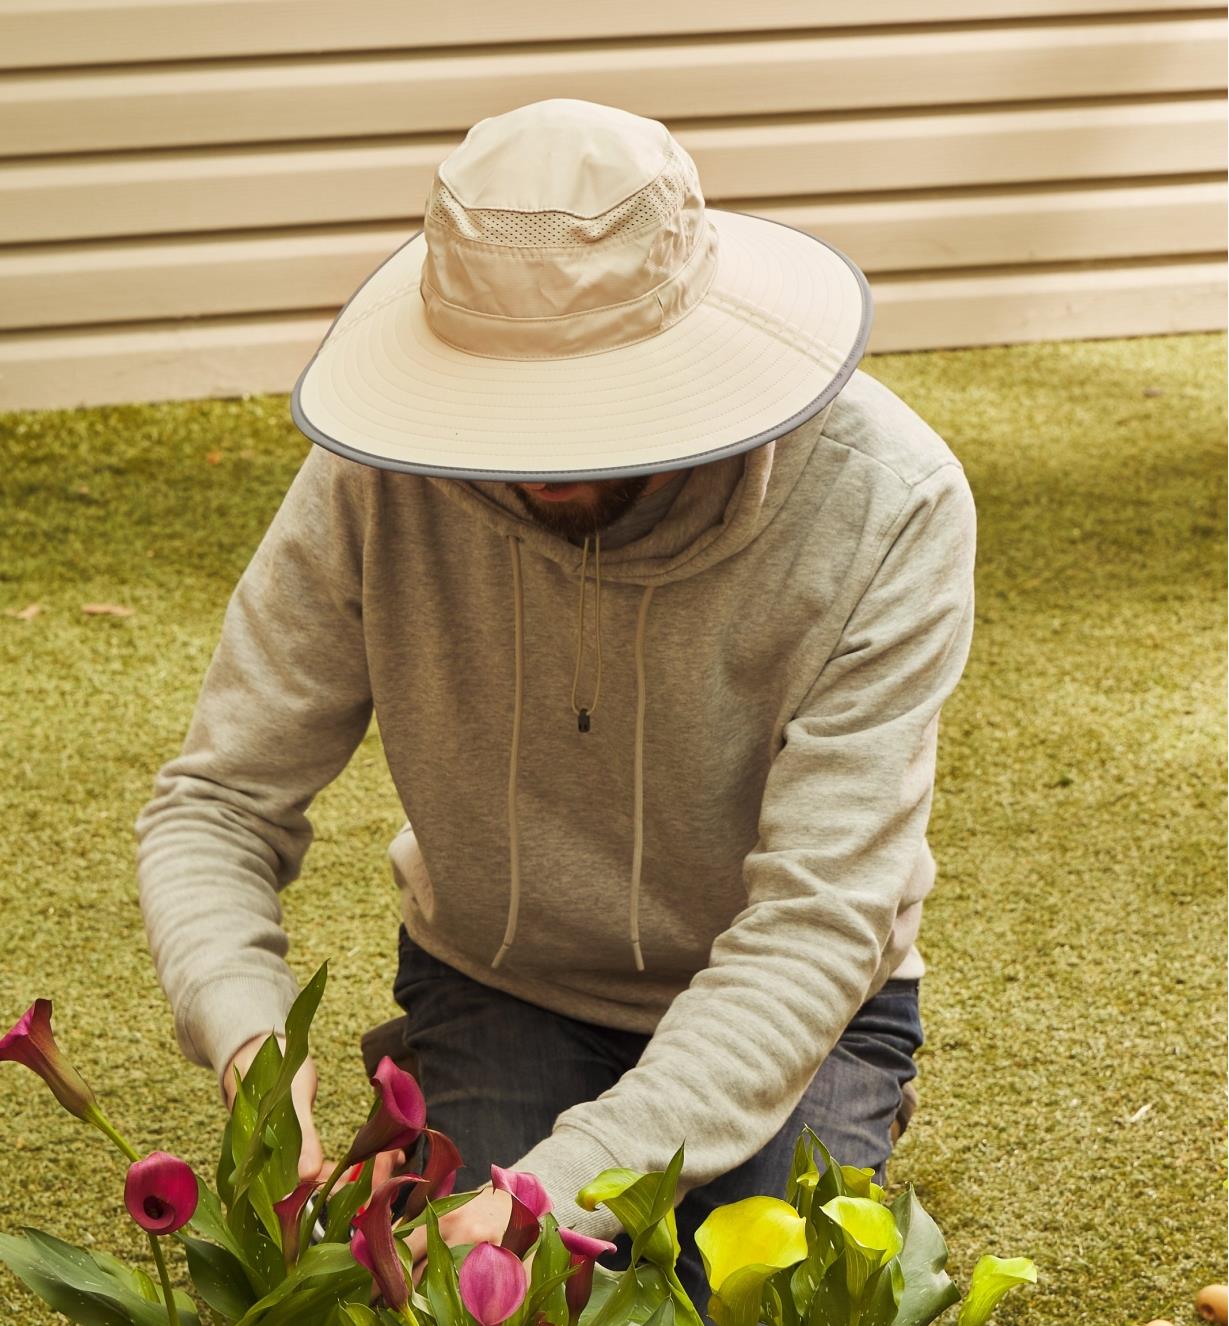 Personne à genoux portant un chapeau à large bord et récoltant des fleurs